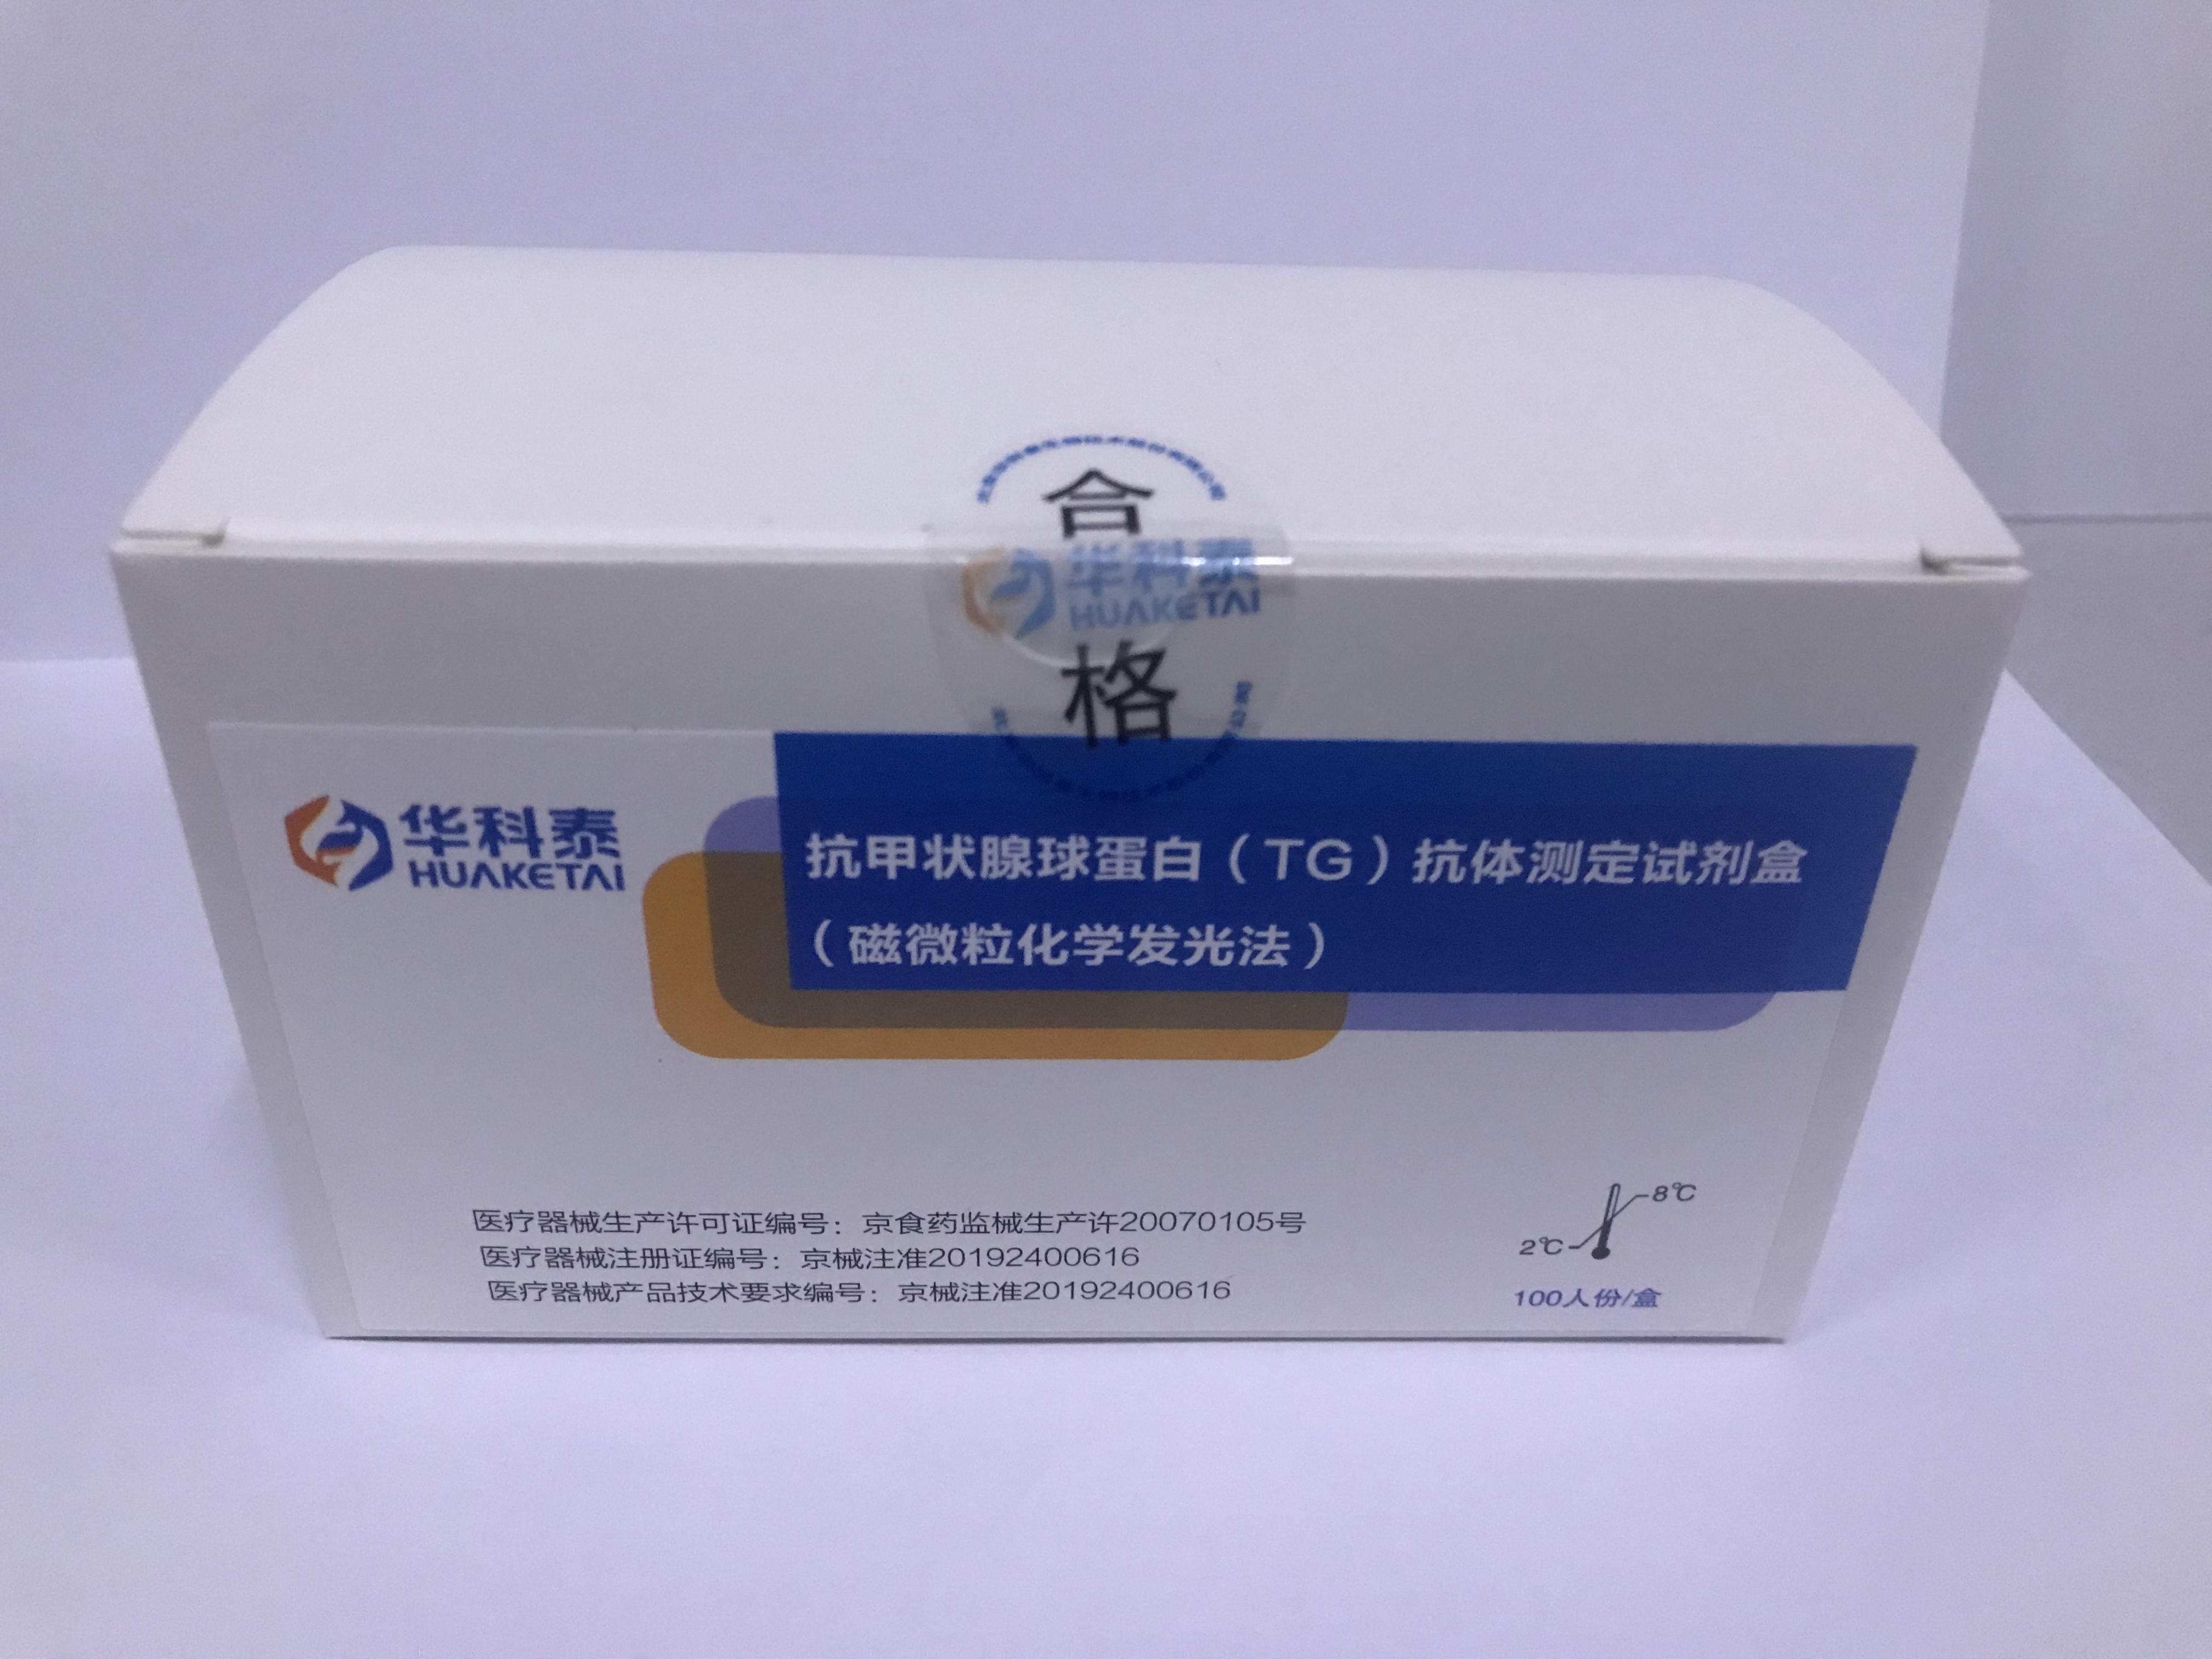 【华科泰】抗甲状腺球蛋白（TG）抗体测定试剂盒（磁微粒化学发光法）